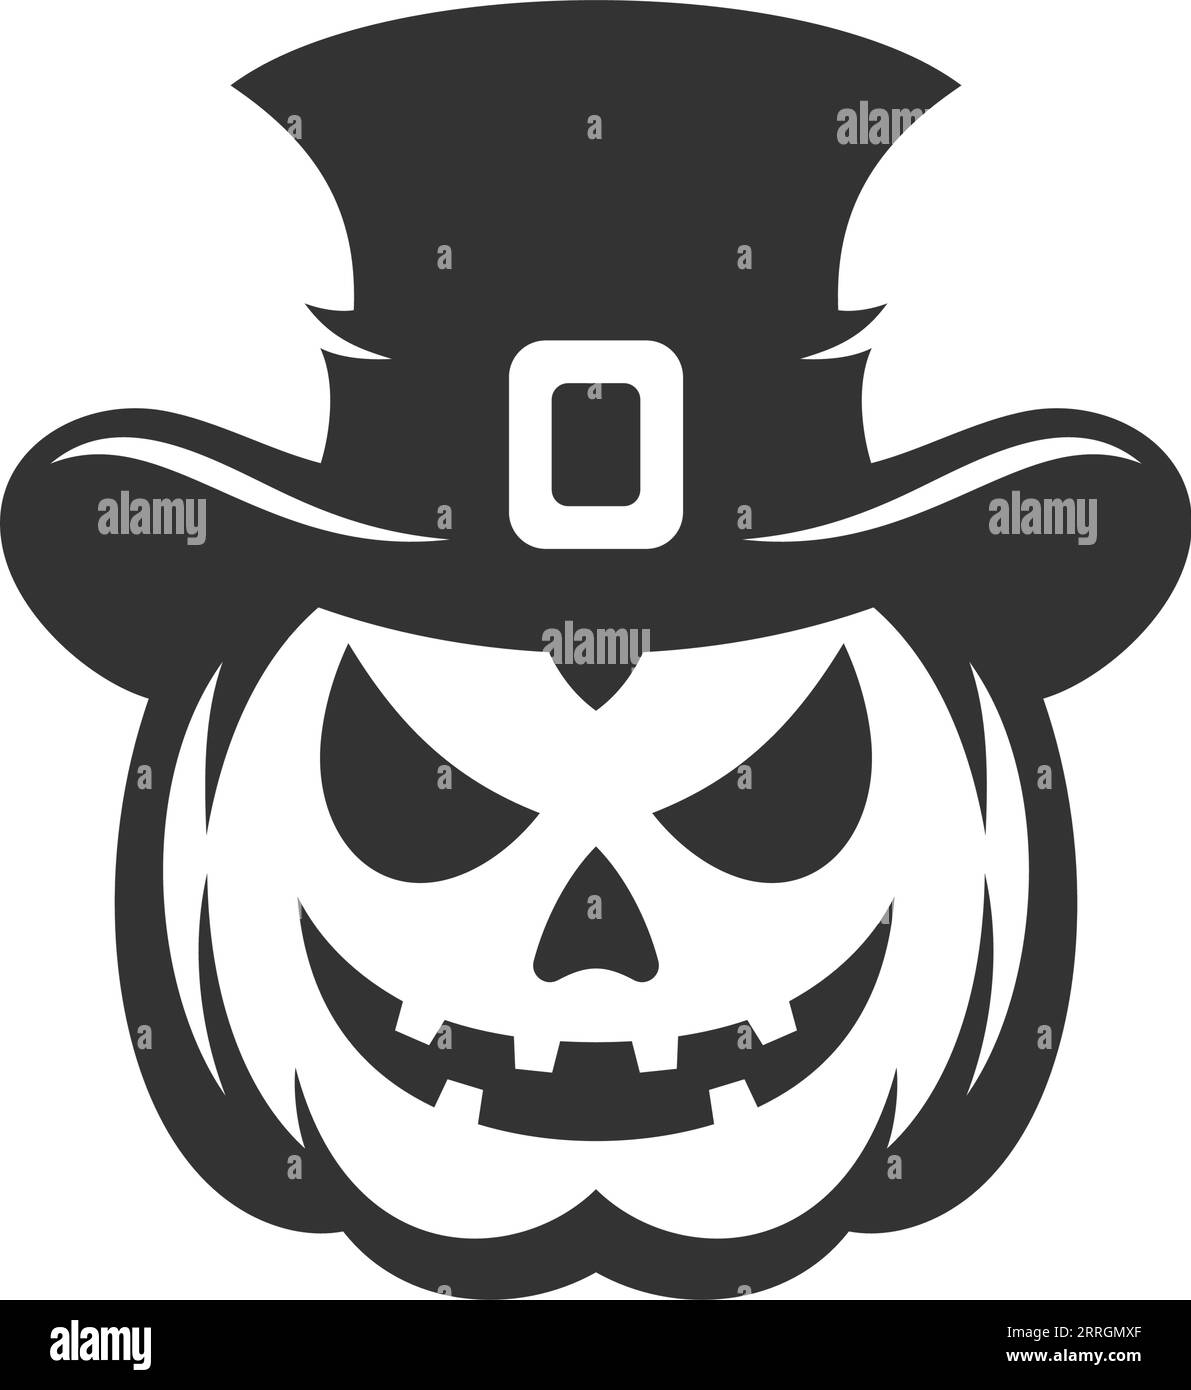 Halloween Angry icona di zucca scolpita o lanterna silhouette monocromatica nera illustrazione piatta vettoriale. Spaventoso mostro horror fantasma con cappello stregone W Illustrazione Vettoriale